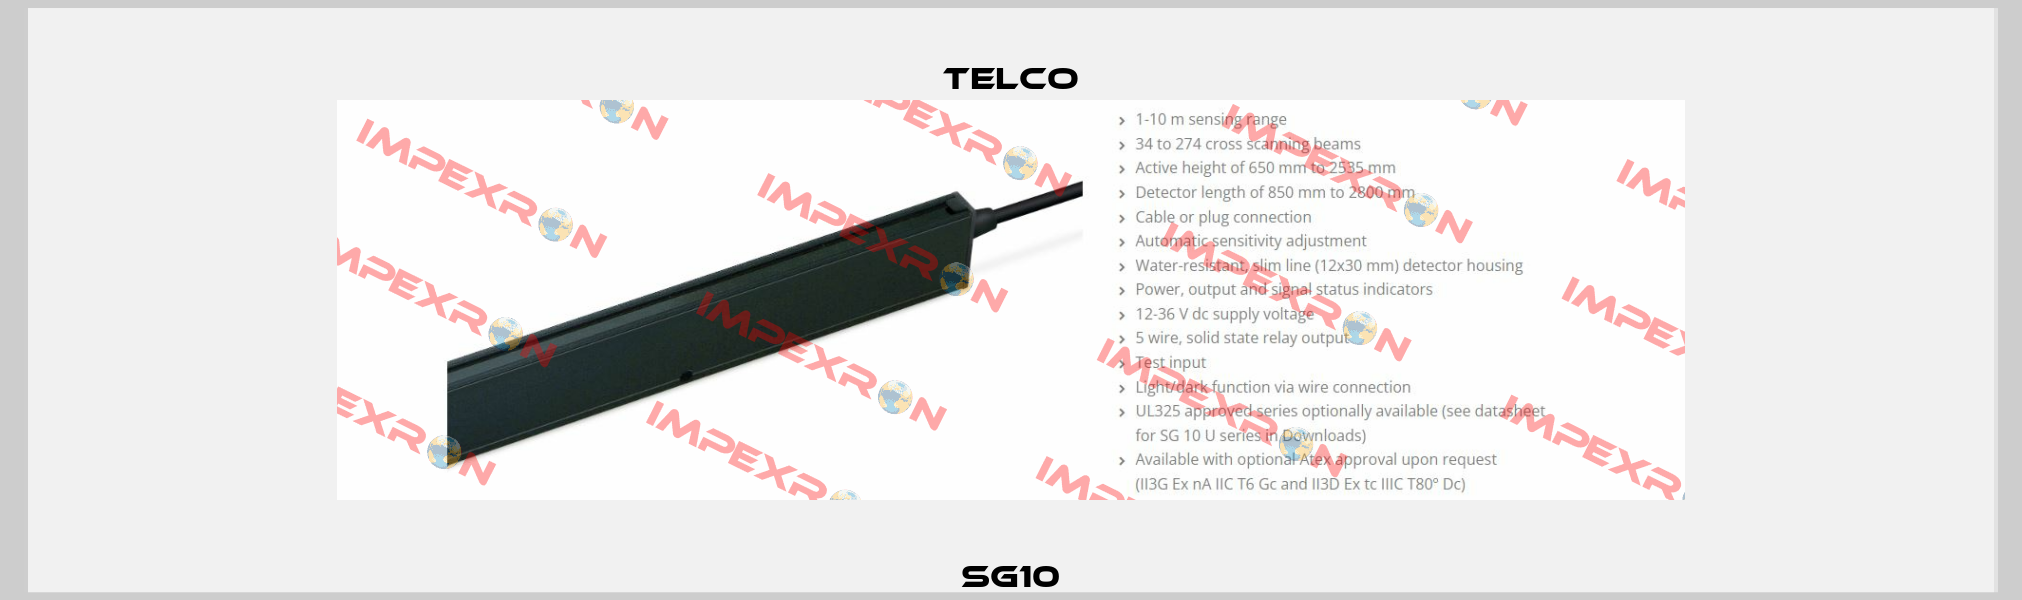 SG10 Telco